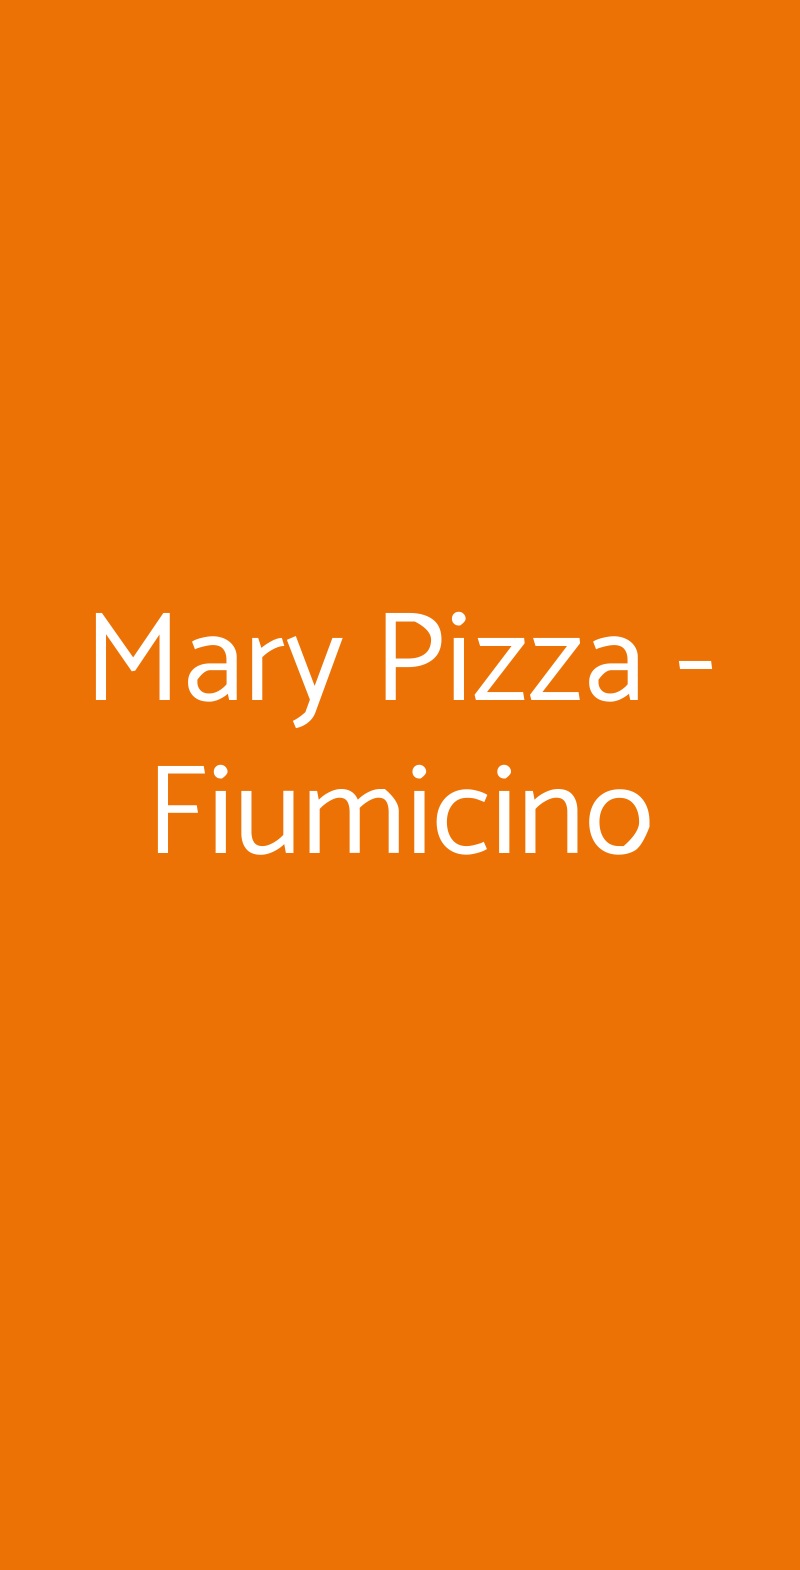 Mary Pizza - Fiumicino Fiumicino menù 1 pagina